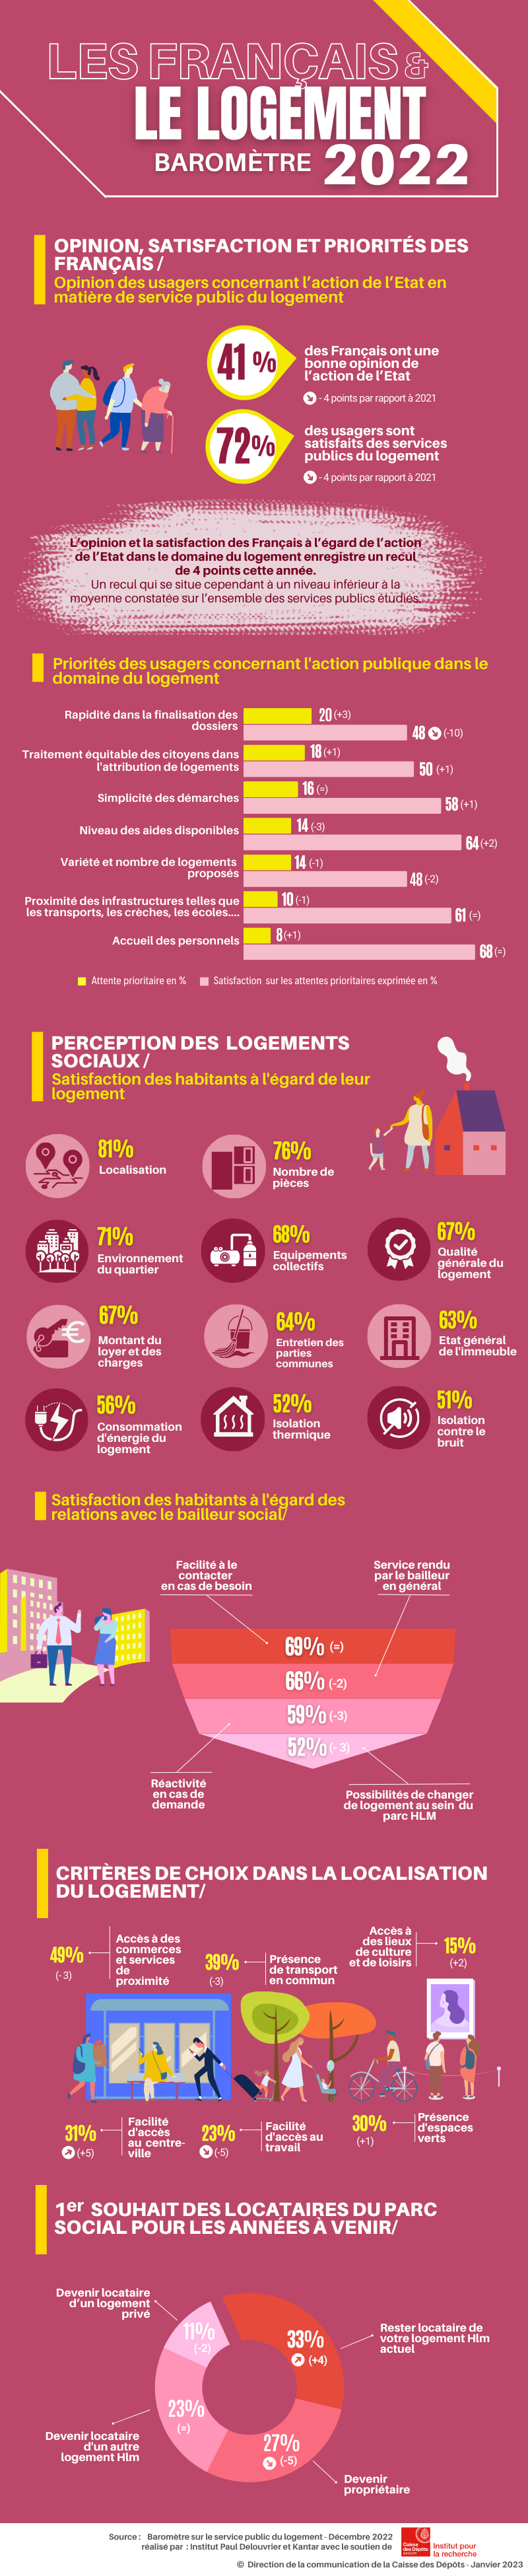 Infographie "Les Français et le logement" - Baromètre 2022 de l'Institut Paul Delouvrier